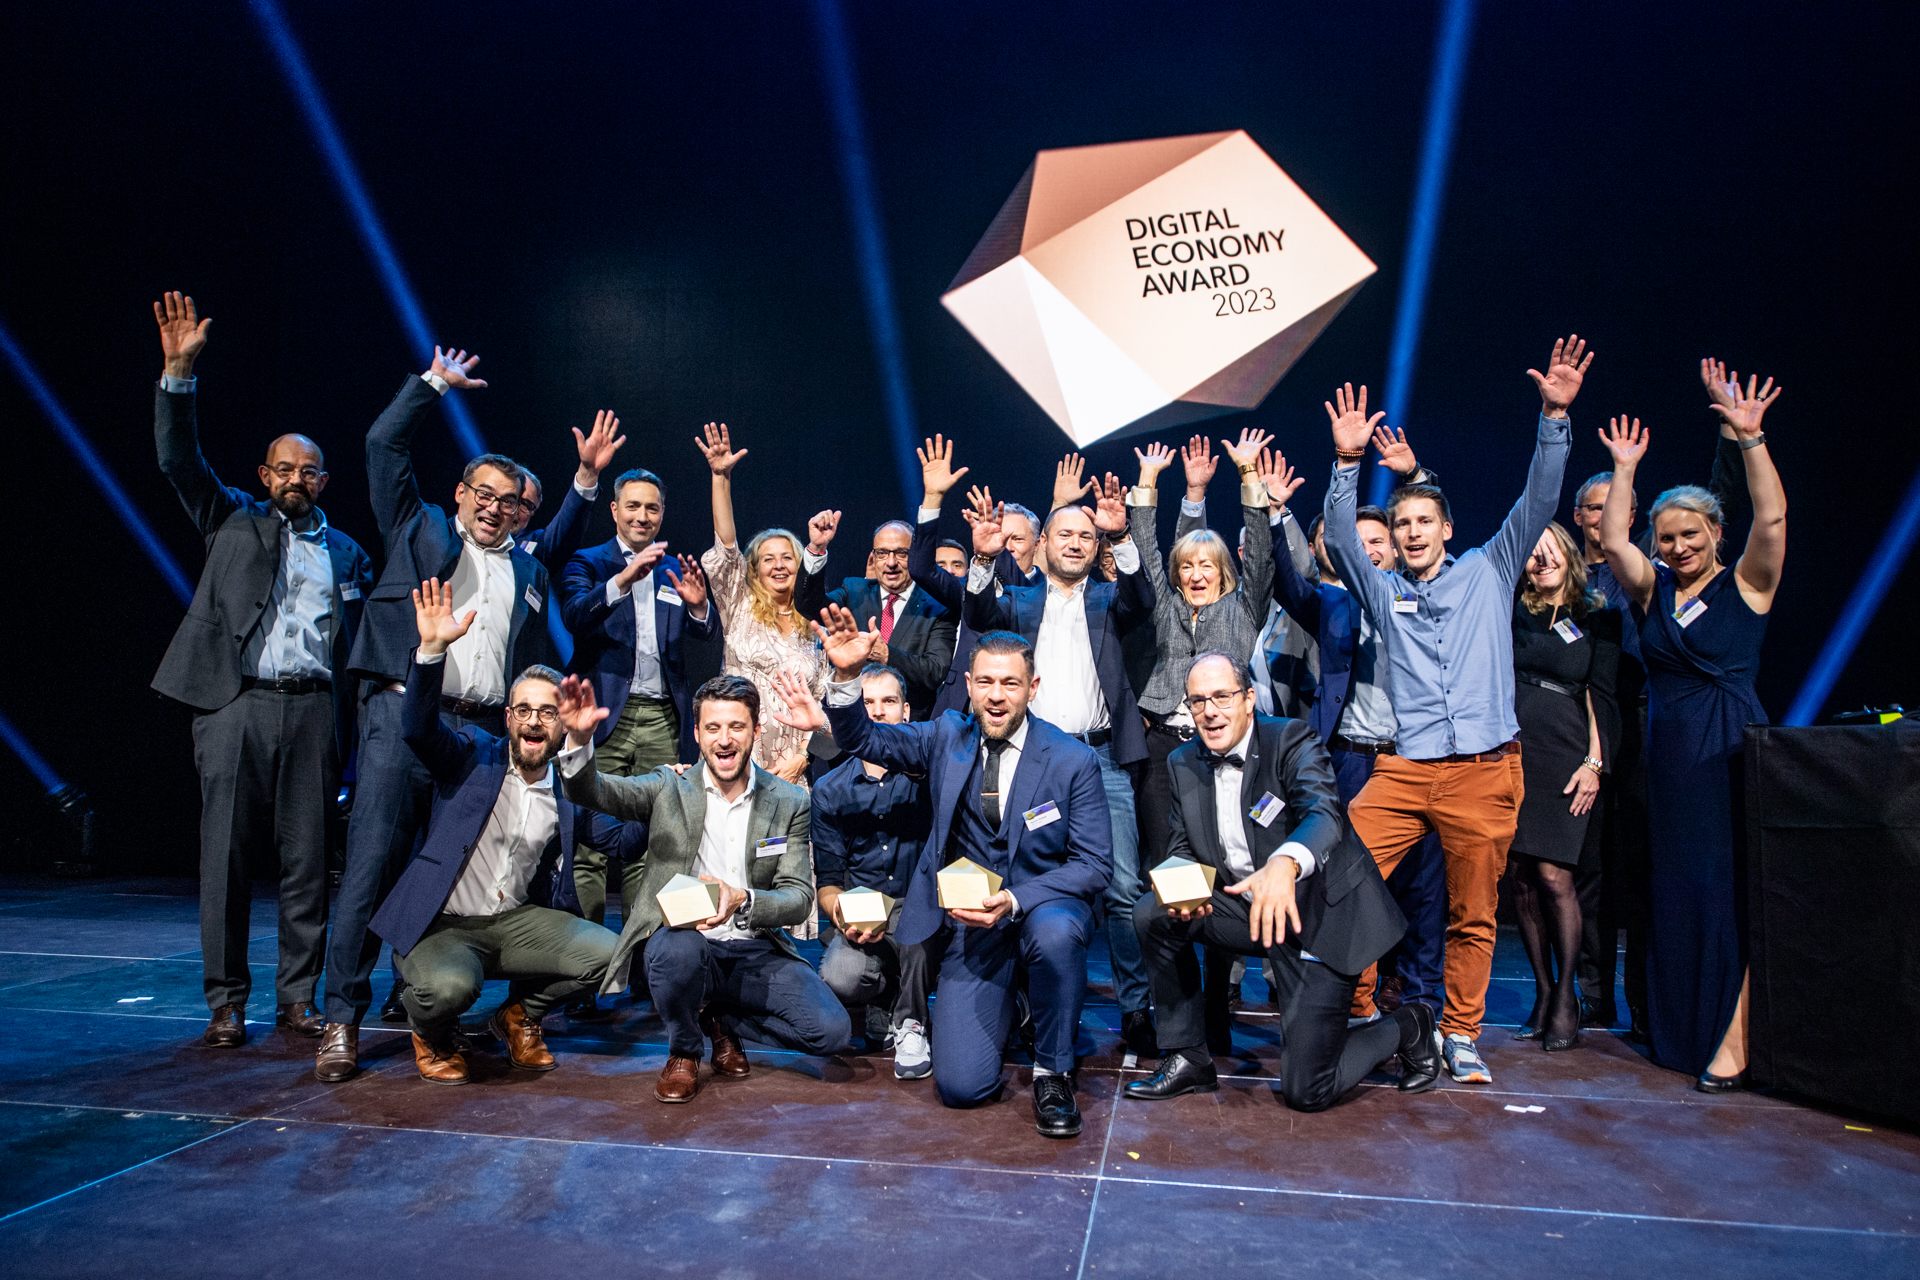 Награда за цифрова икономика: представянето на наградите за 2023 г. се състоя в Hallenstadion в Цюрих, Швейцария на 16 ноември